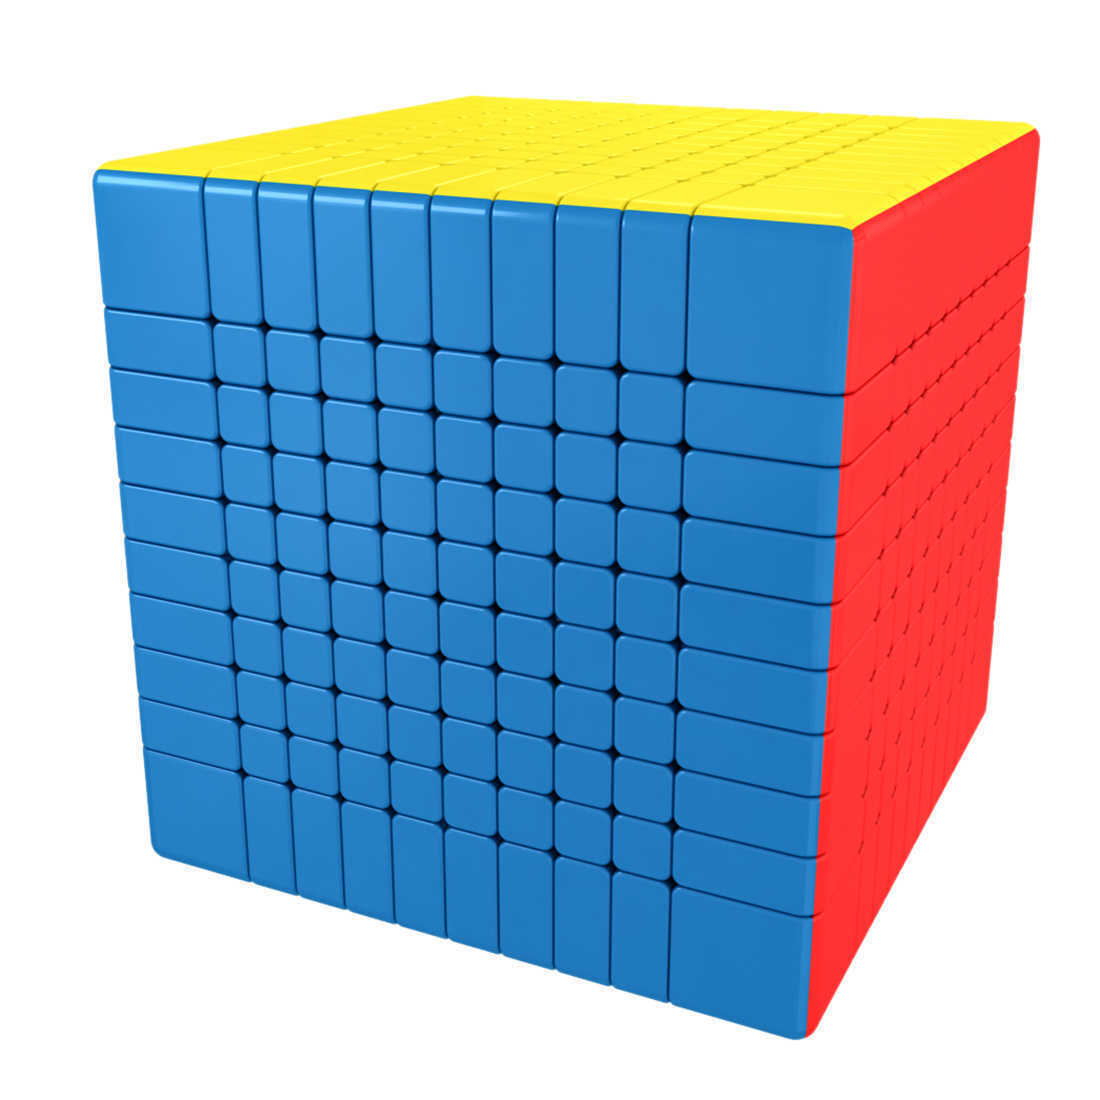 Cube x3. Кубик Рубика 10х10. Кубик рубик 10x10. Кубик Рубика 10 на 10. Кубик 10x10x10.